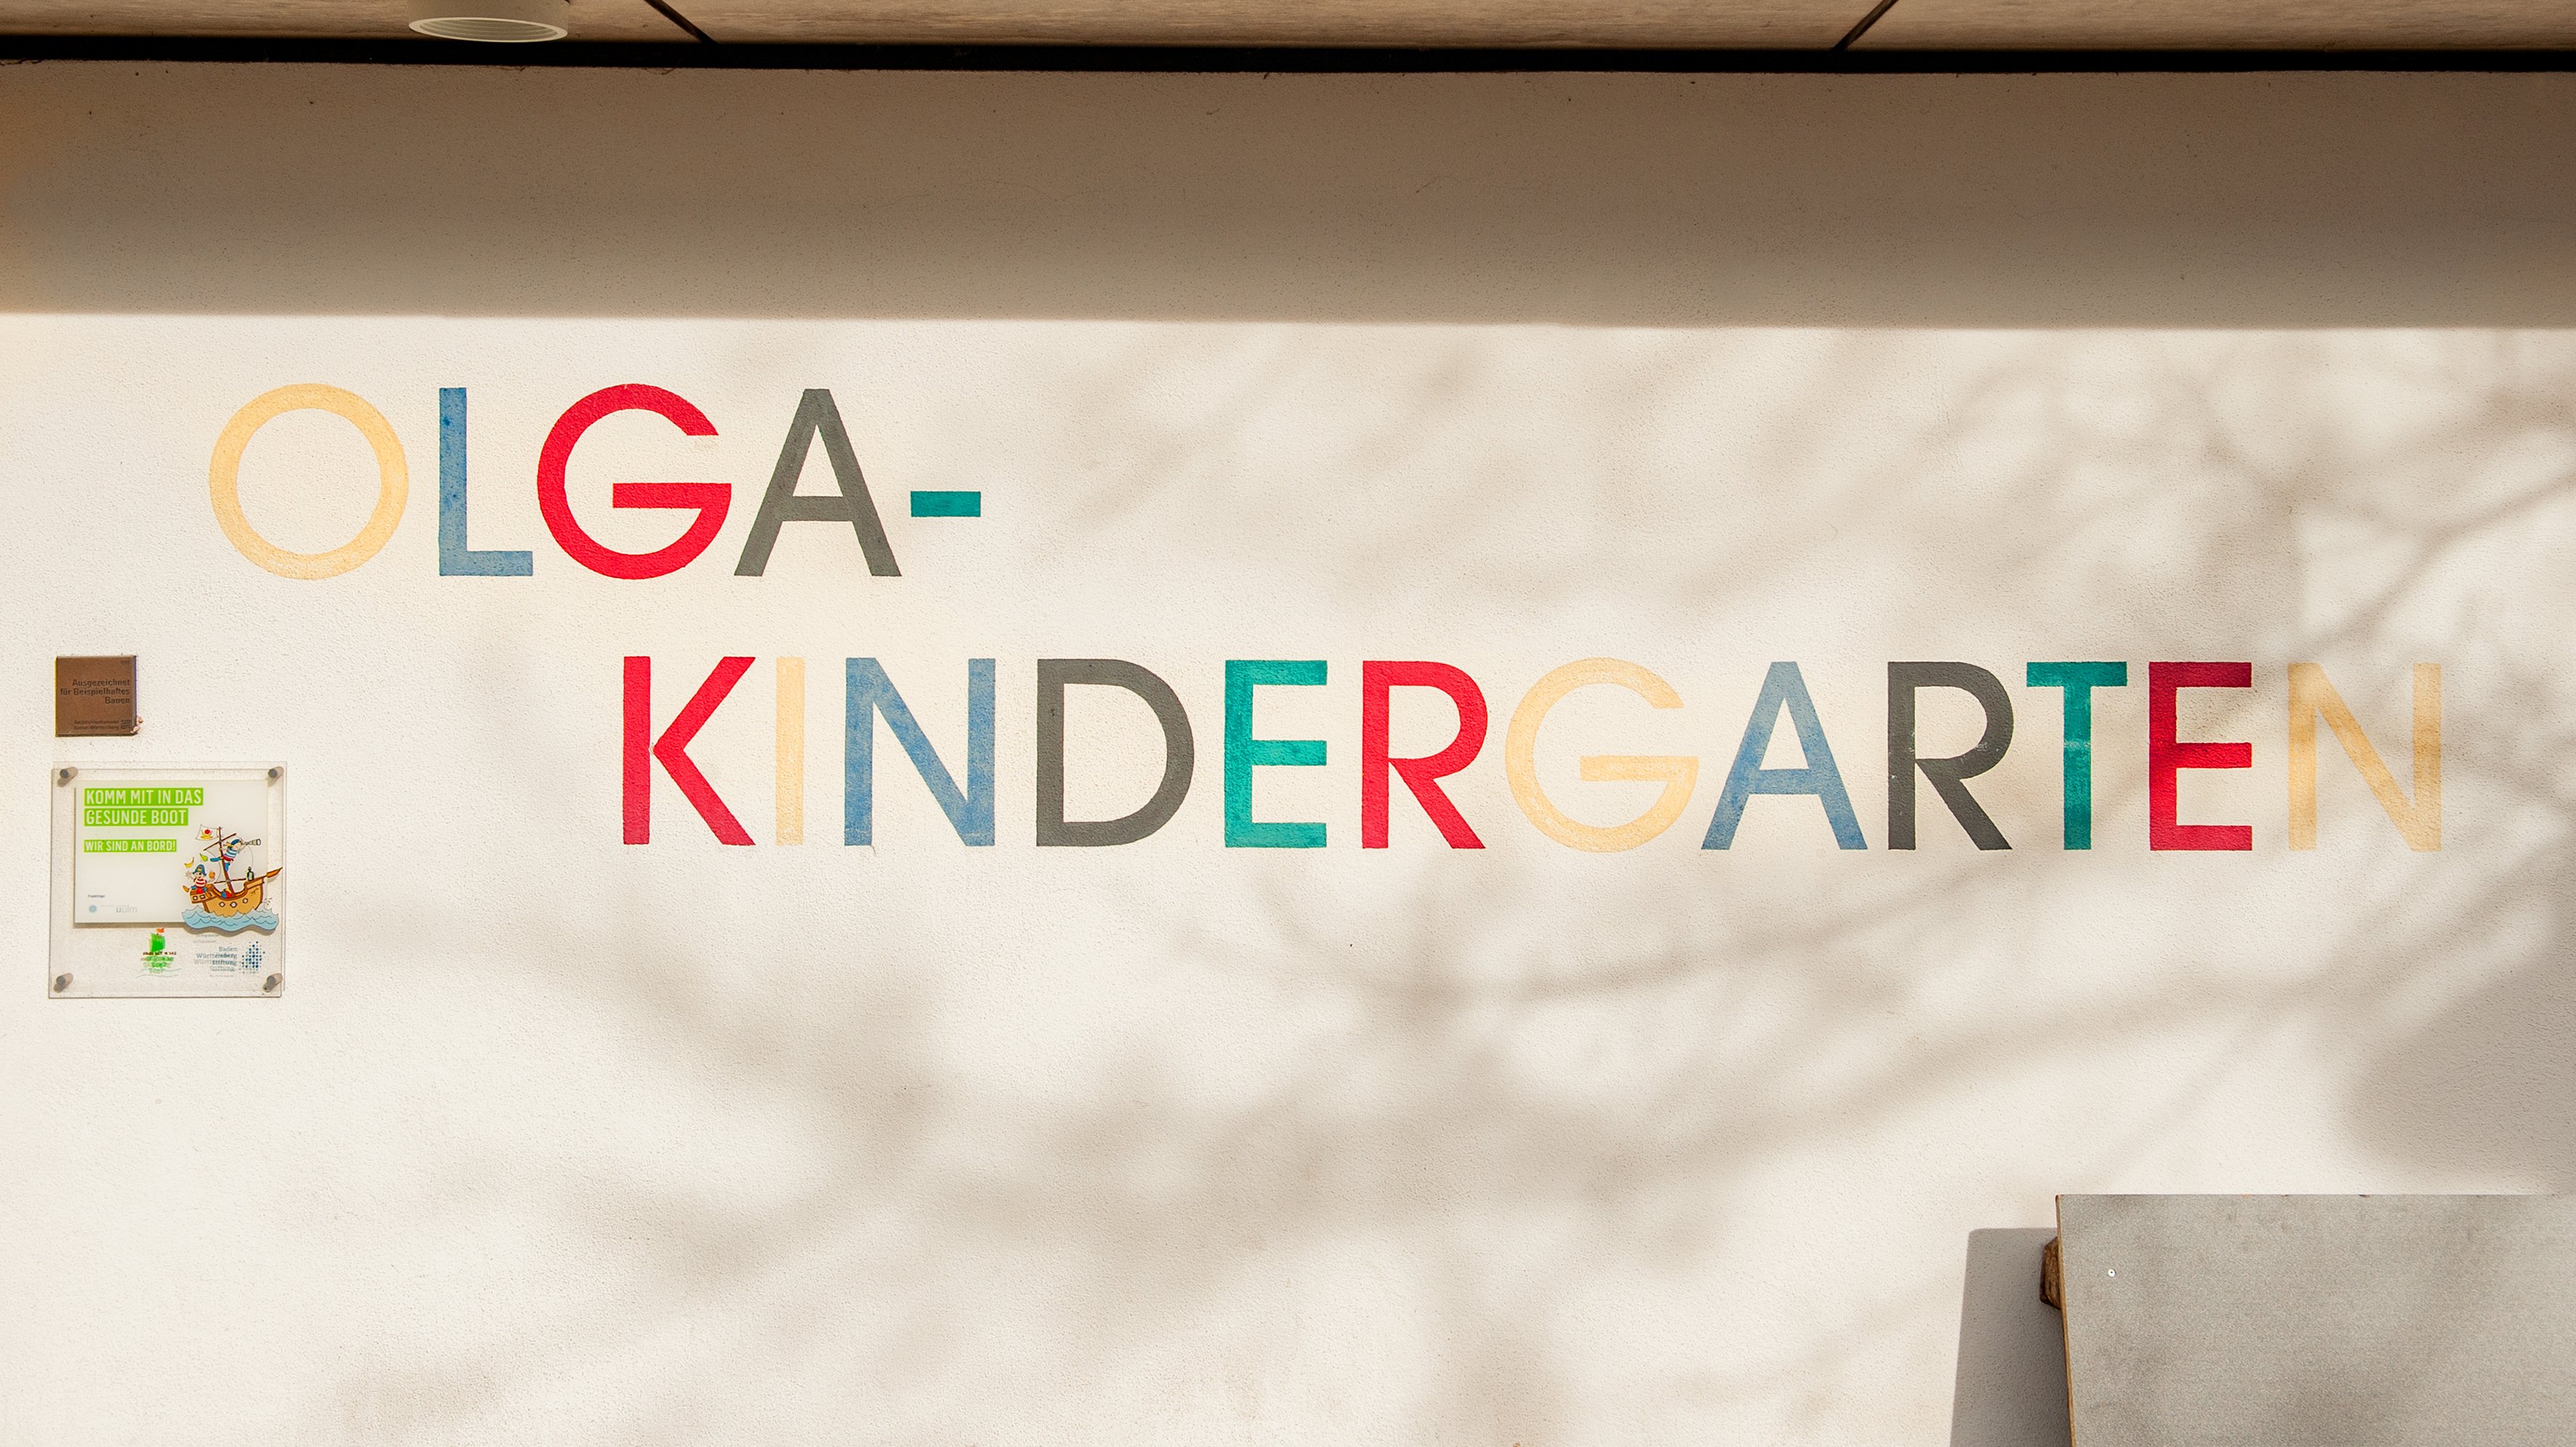 Olgakindergarten 